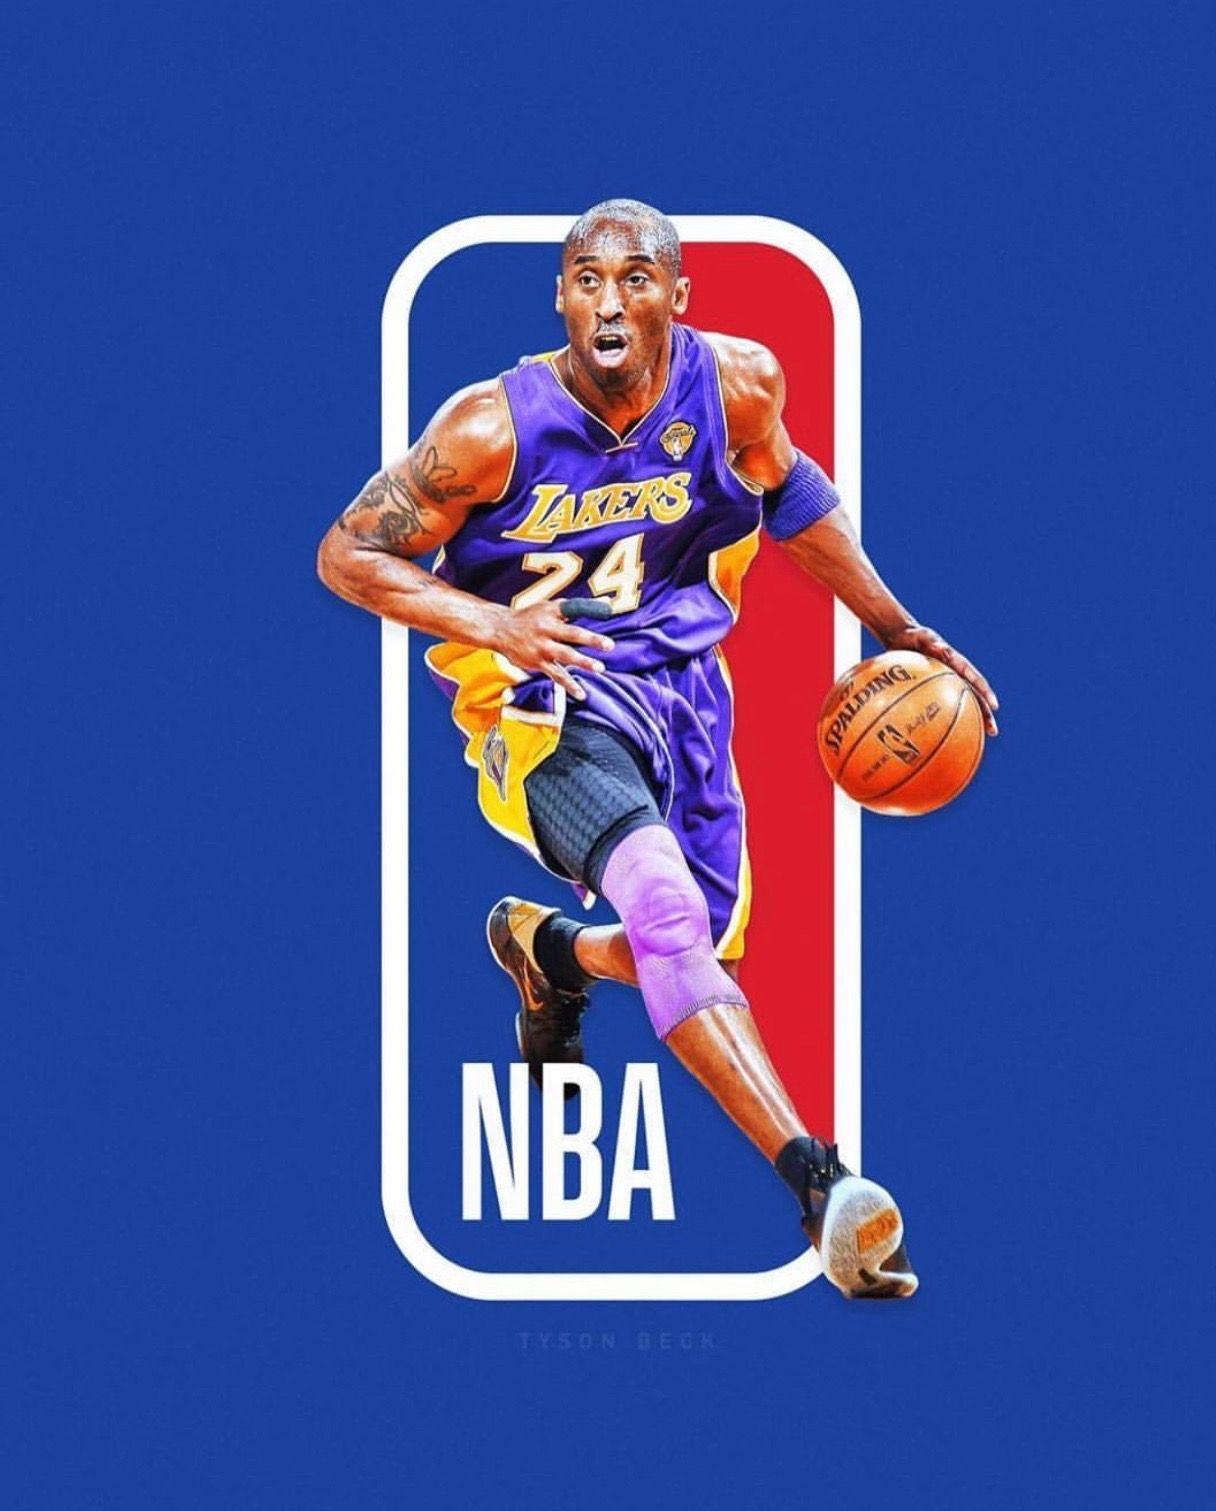 Lakers 4 life. Nba wallpaper, Nba, Nba